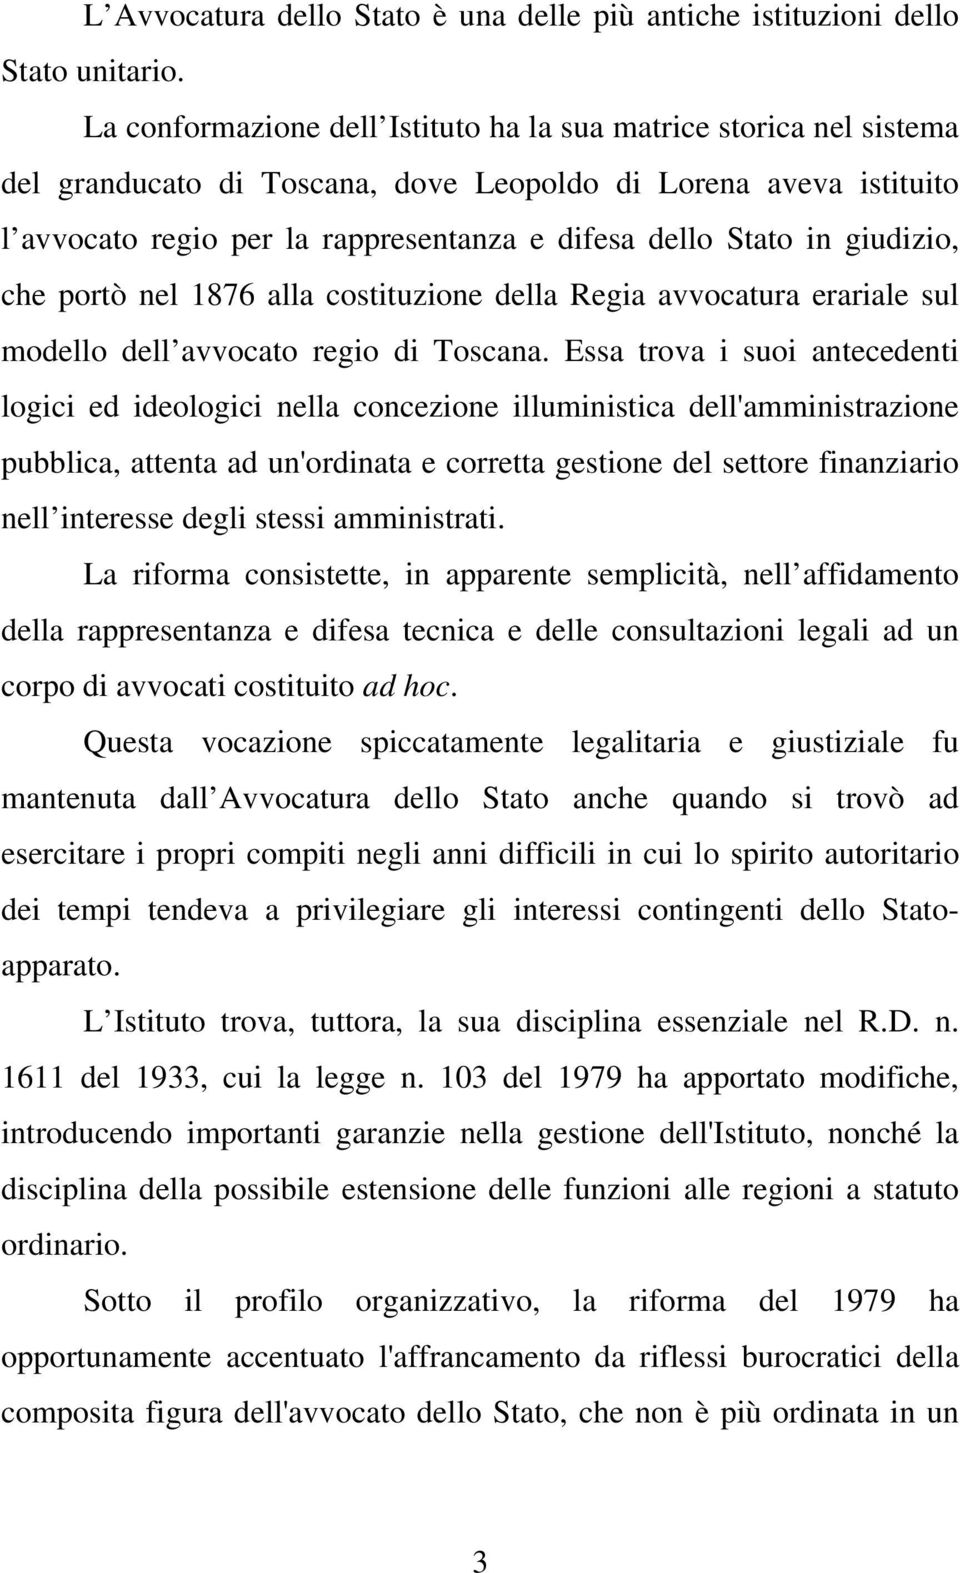 giudizio, che portò nel 1876 alla costituzione della Regia avvocatura erariale sul modello dell avvocato regio di Toscana.